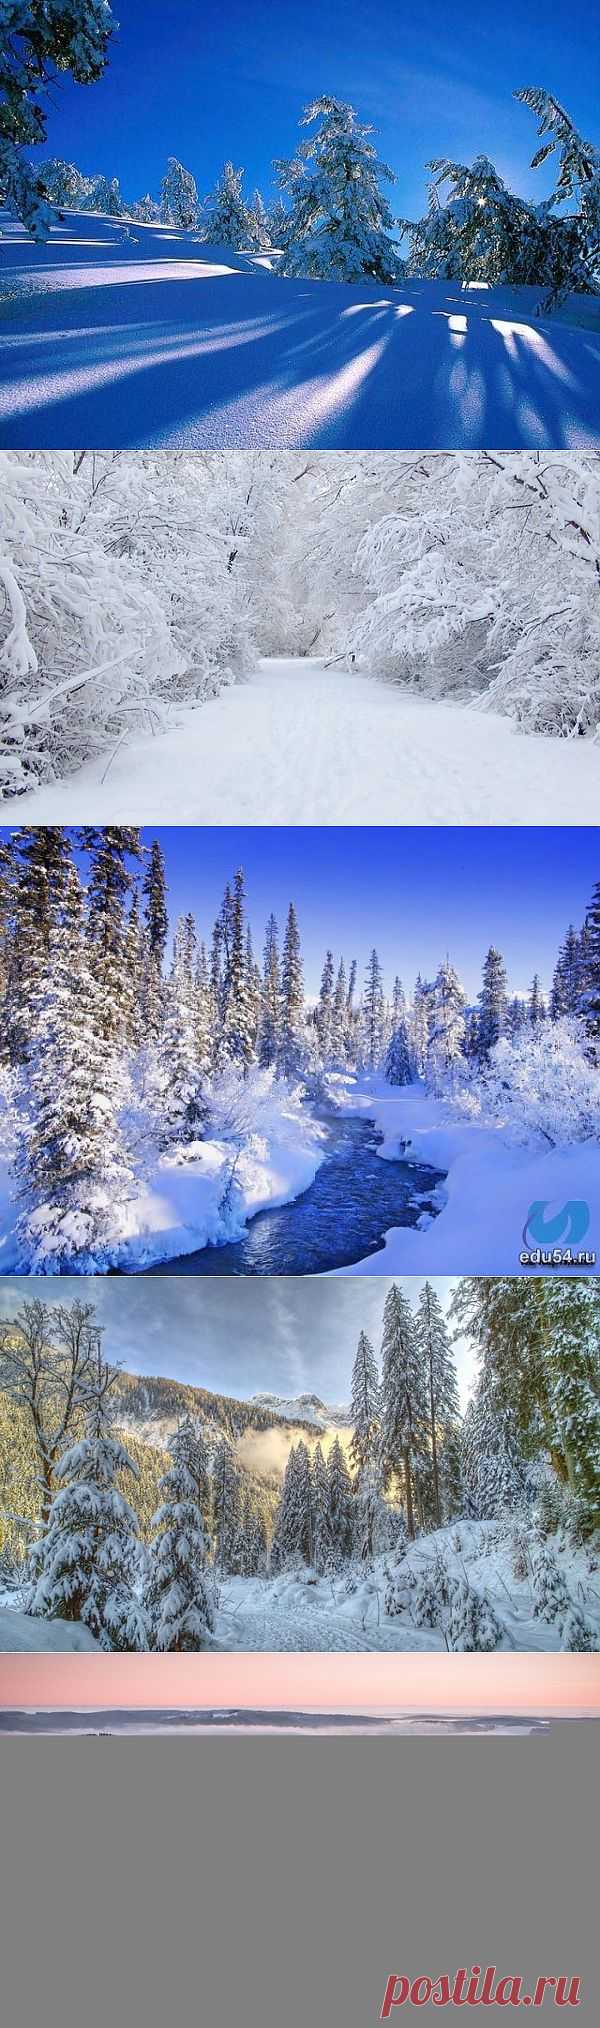 сообщение Volody24_gl : Обои для рабочего стола "Зимние пейзажи" (14:01 12-01-2014) [4010943/307451882] - nadezda_55@mail.ru - Почта Mail.Ru